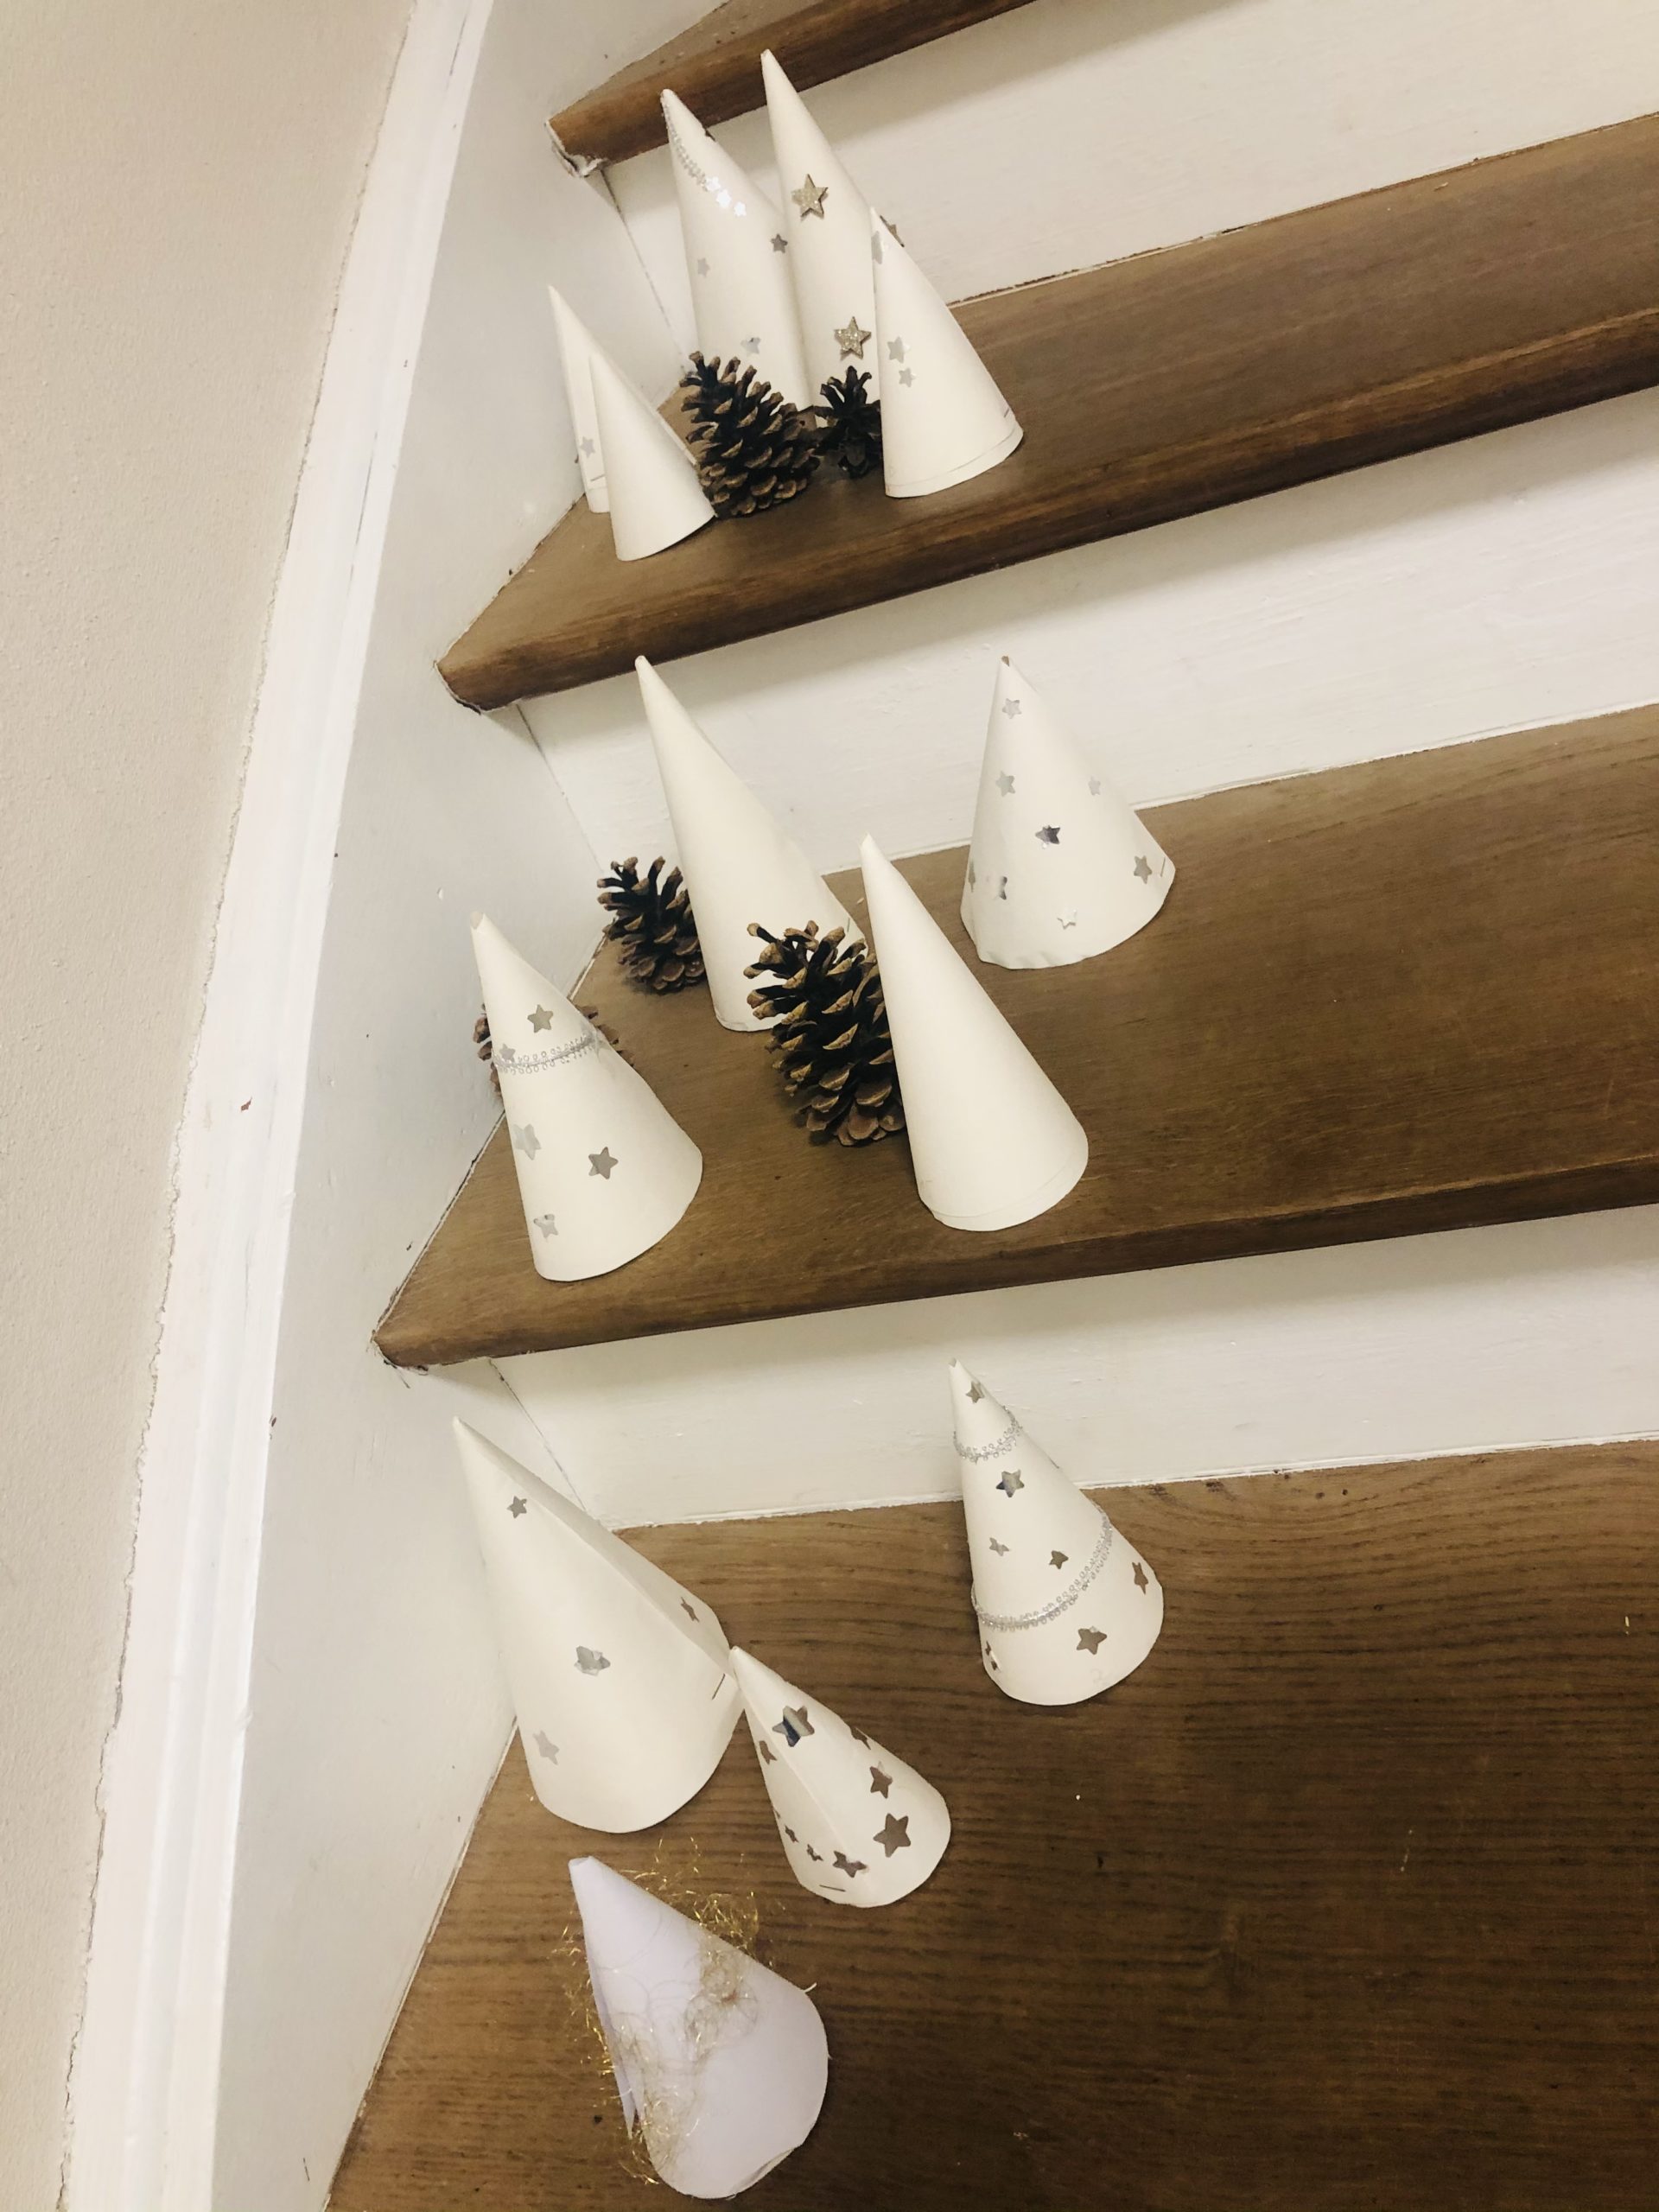 Bild zum Schritt 14 für das Bastel- und DIY-Abenteuer für Kinder: 'Hier auf einer Treppe dekoriert.'